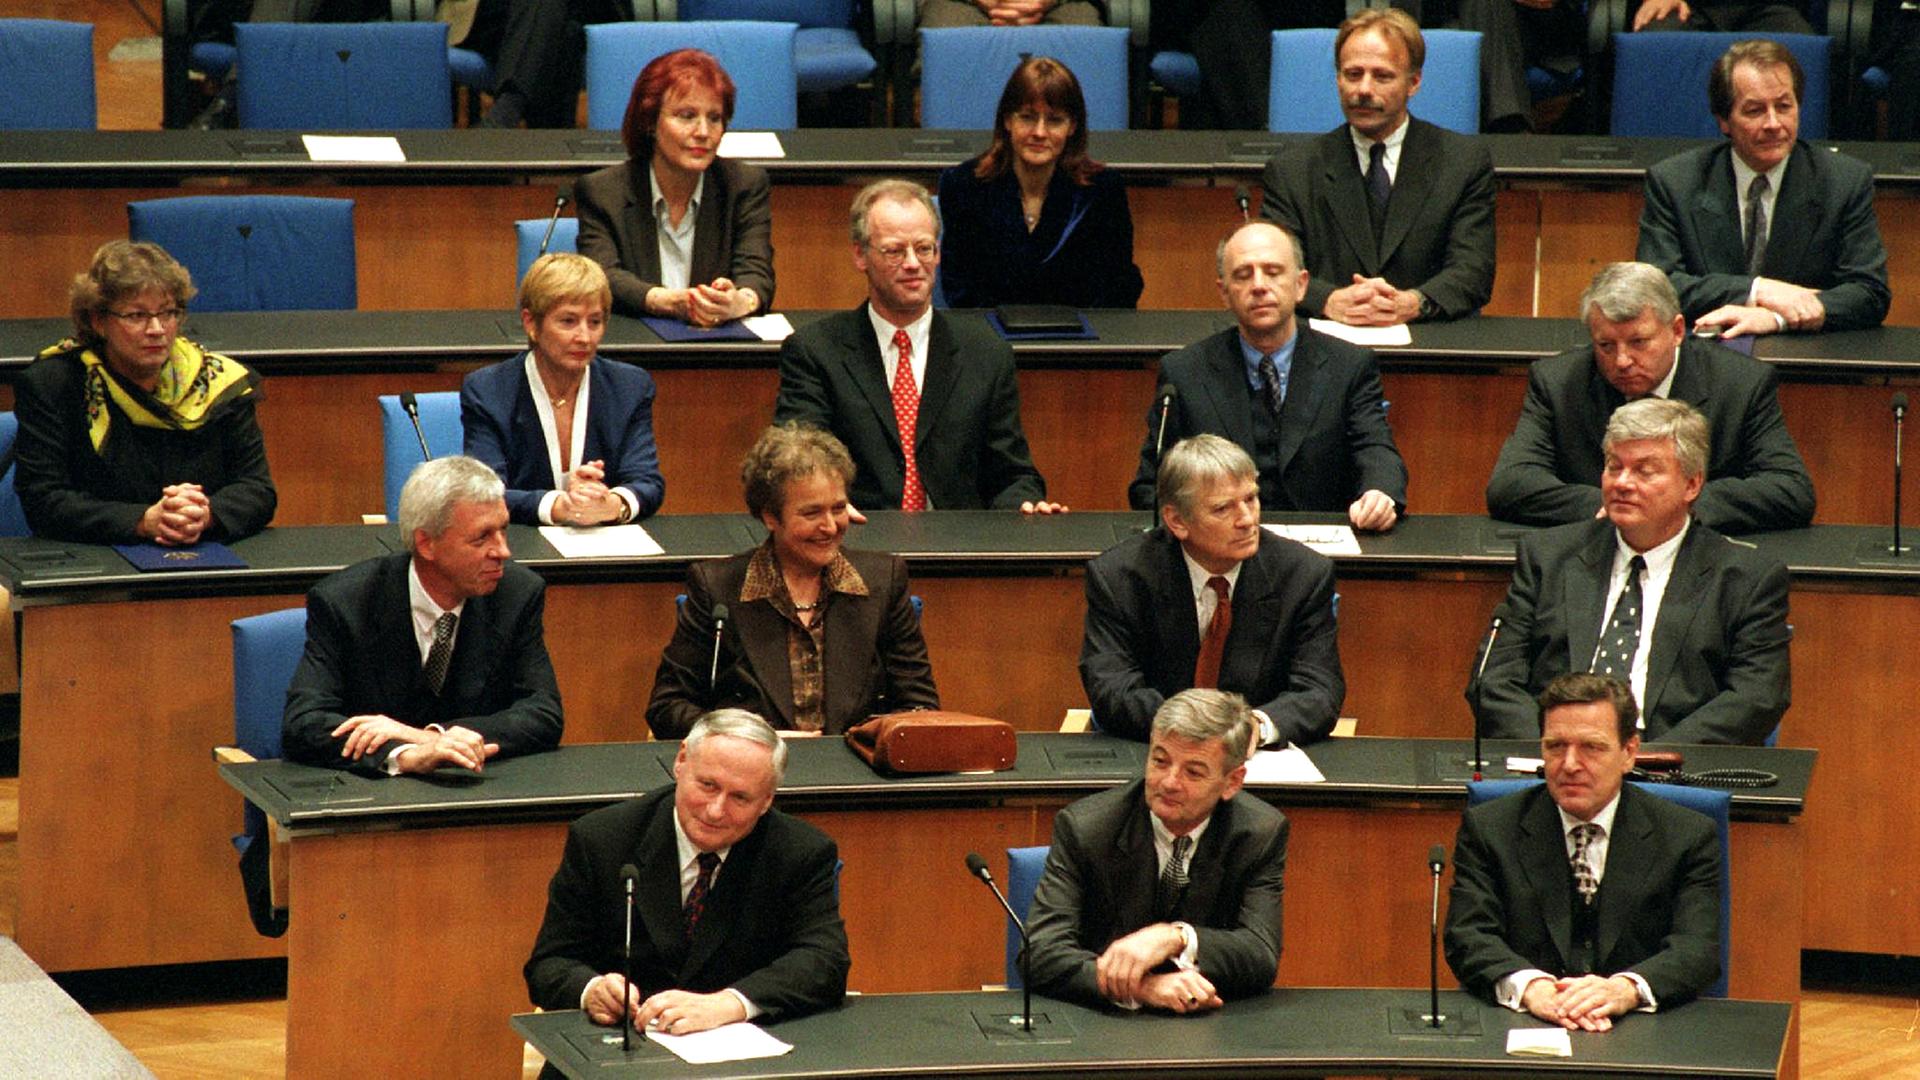 Mitglieder der neuen Bundesregierung (u.a. Werner Müller) sitzen am 27.10.1998 erstmal auf Ihren Plätzen im Deutschen Bundestag